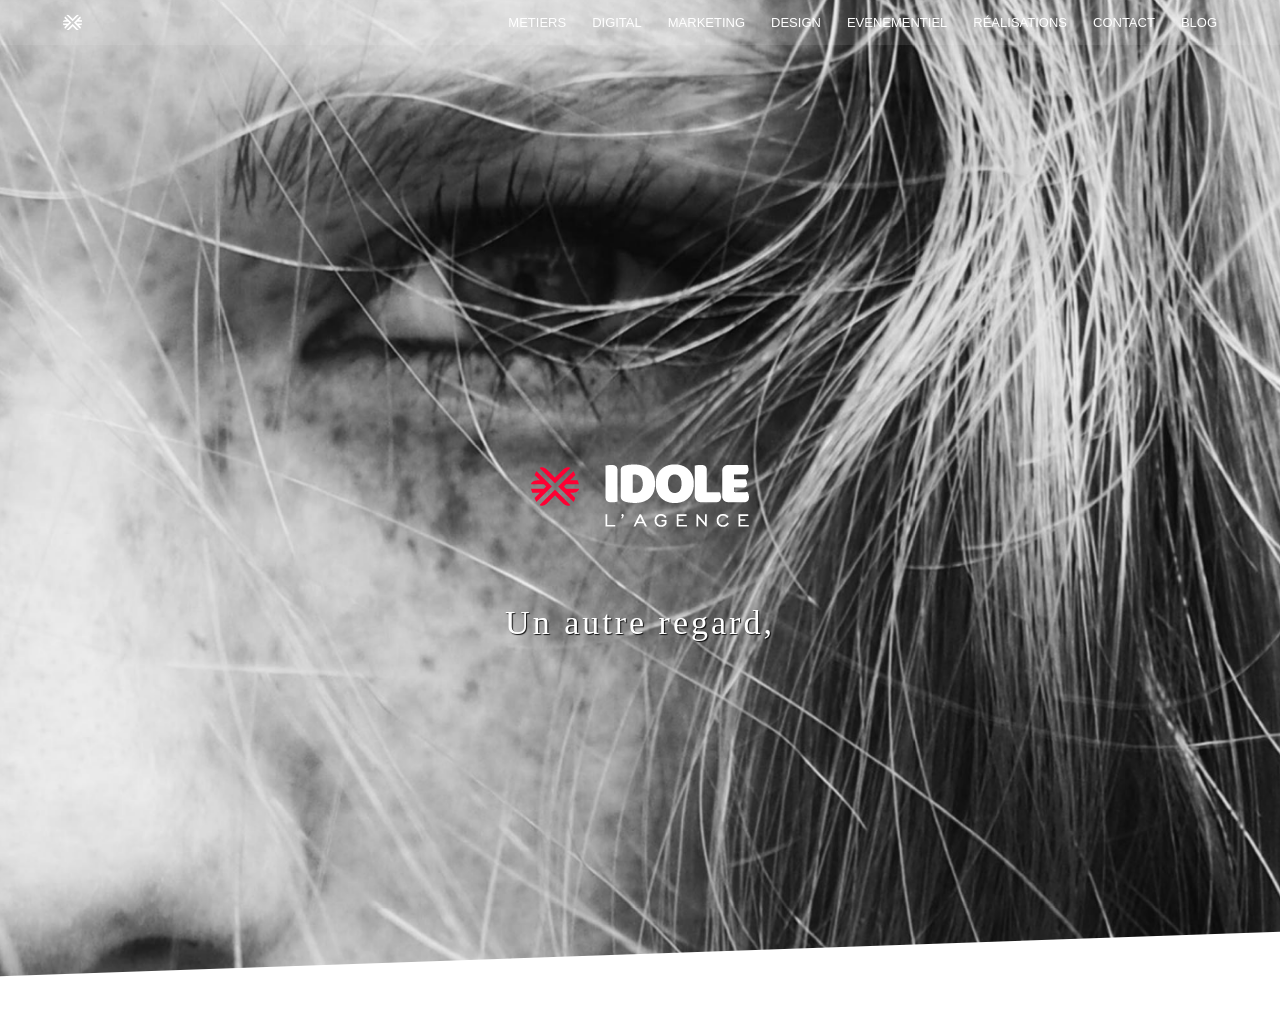 www.idole.net